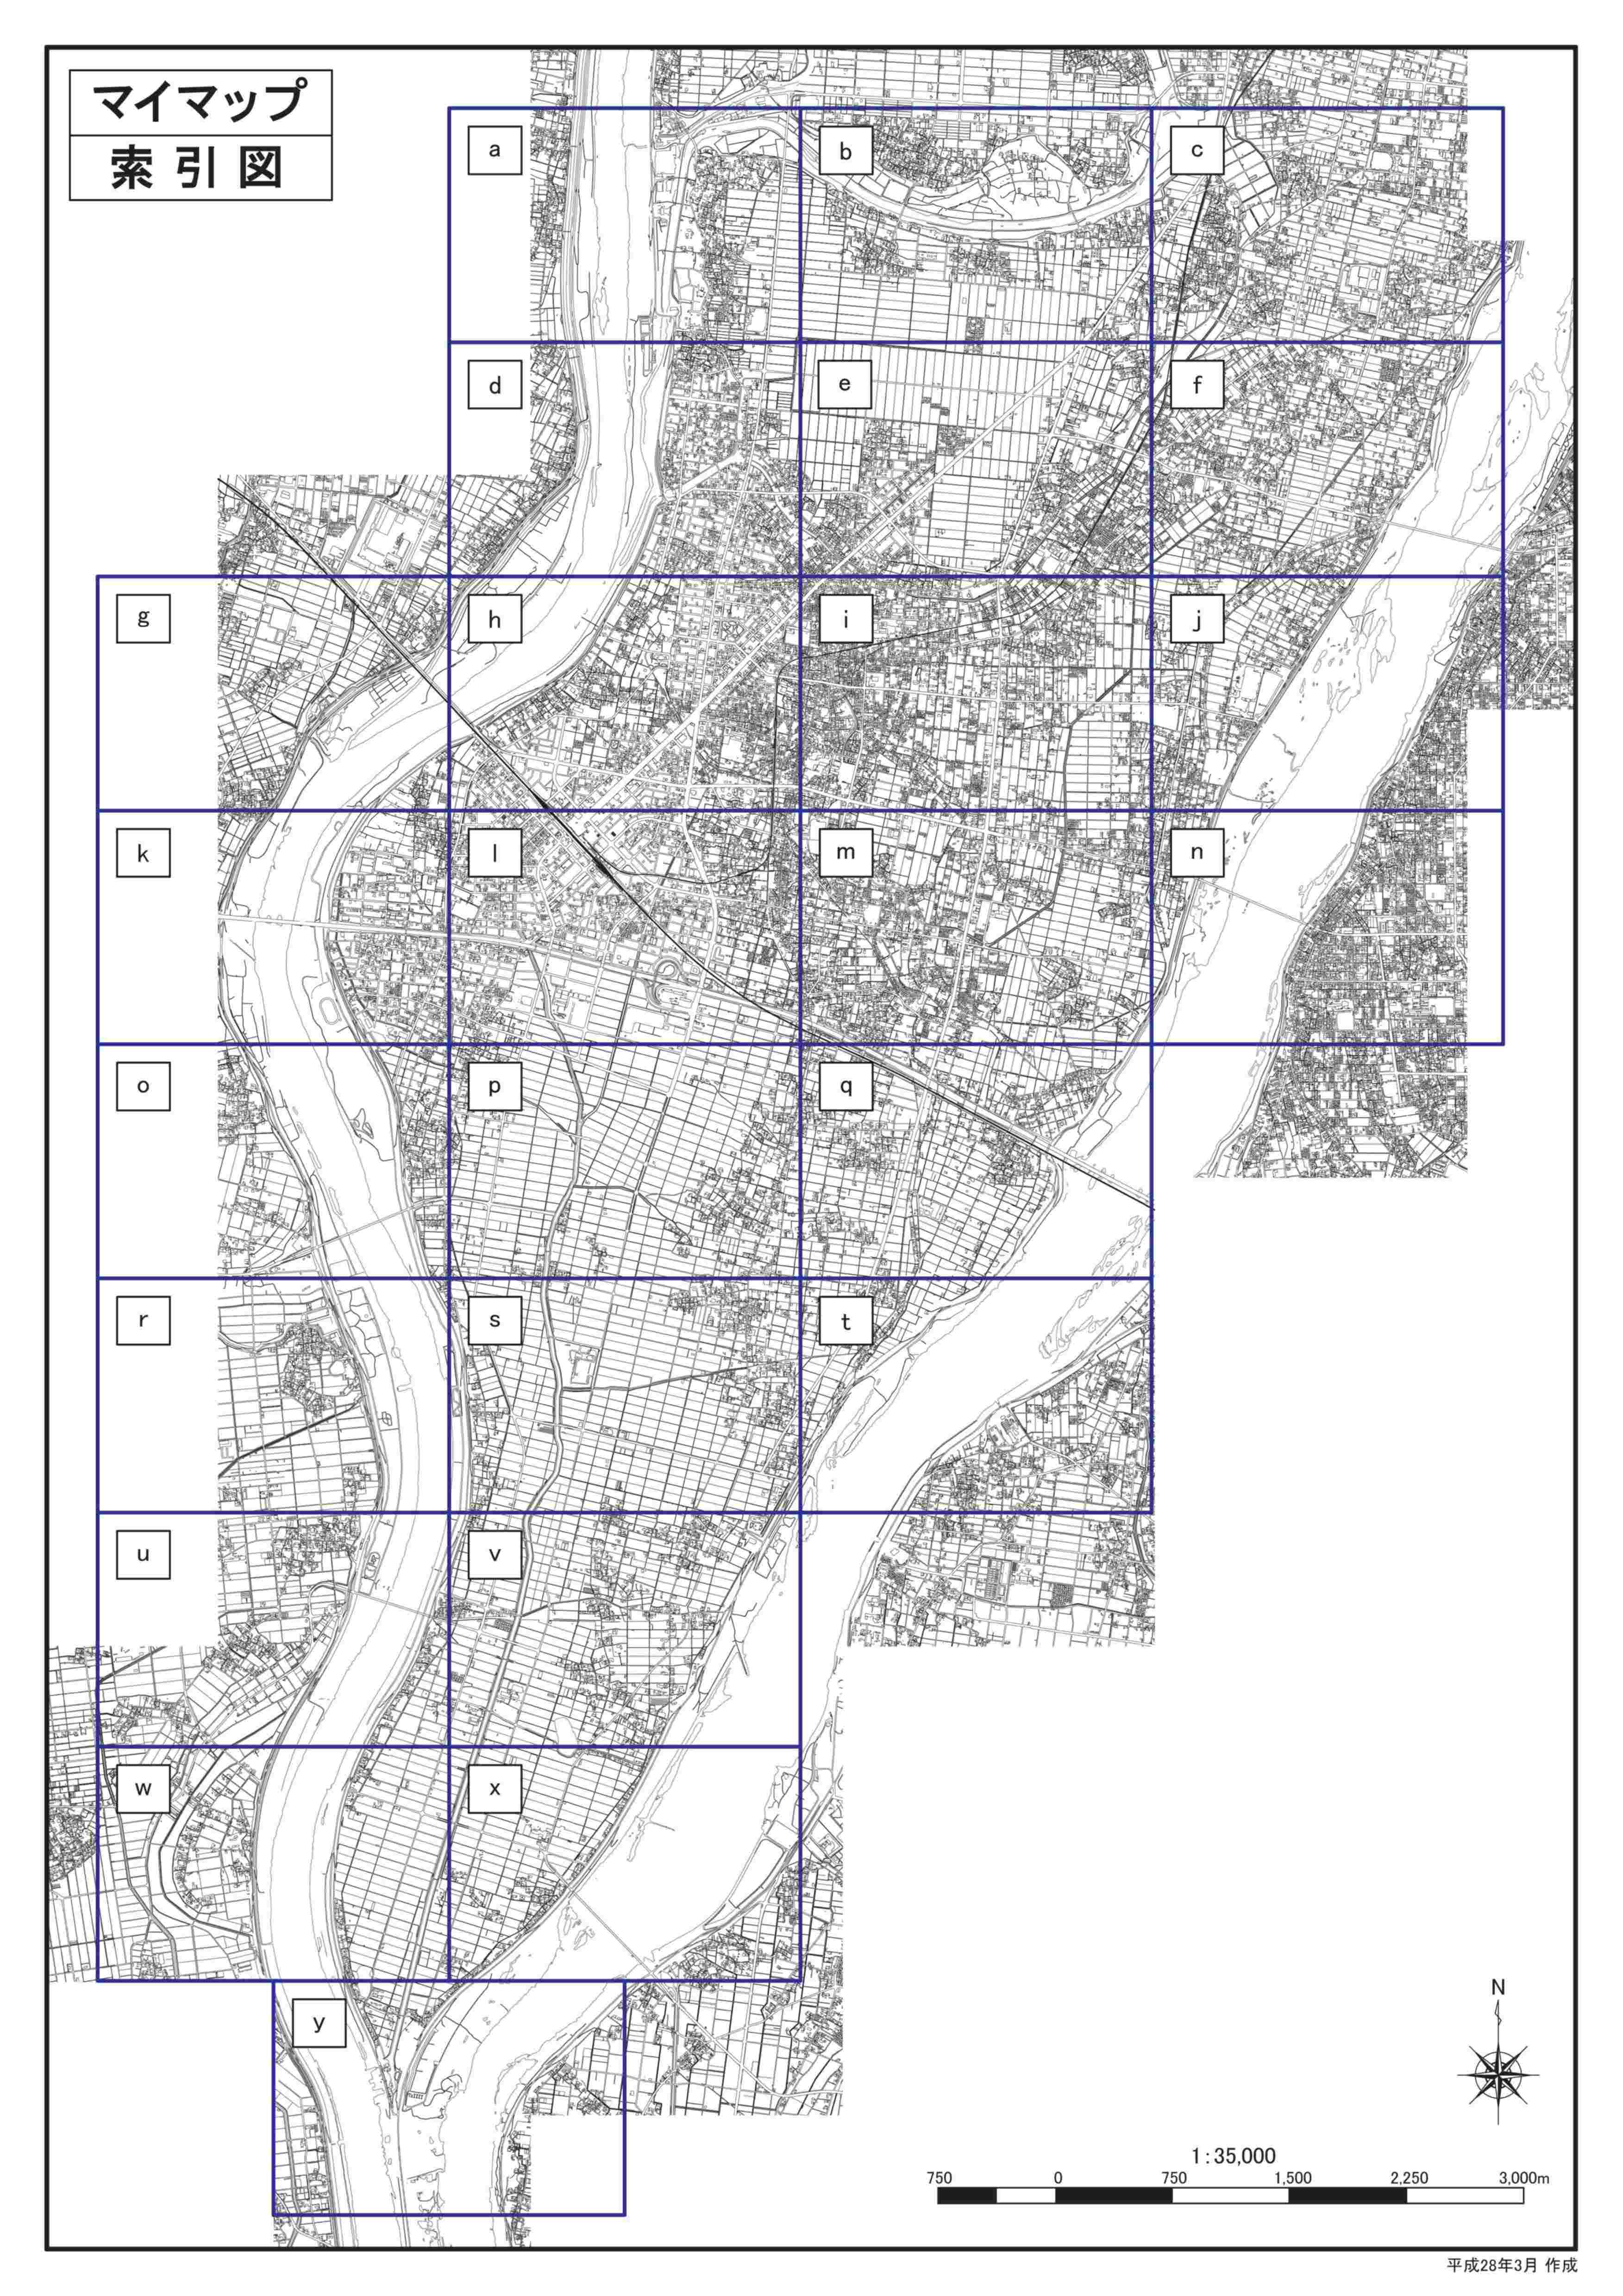 境川洪水ハザードマップ計画規模版（詳細図）の画像